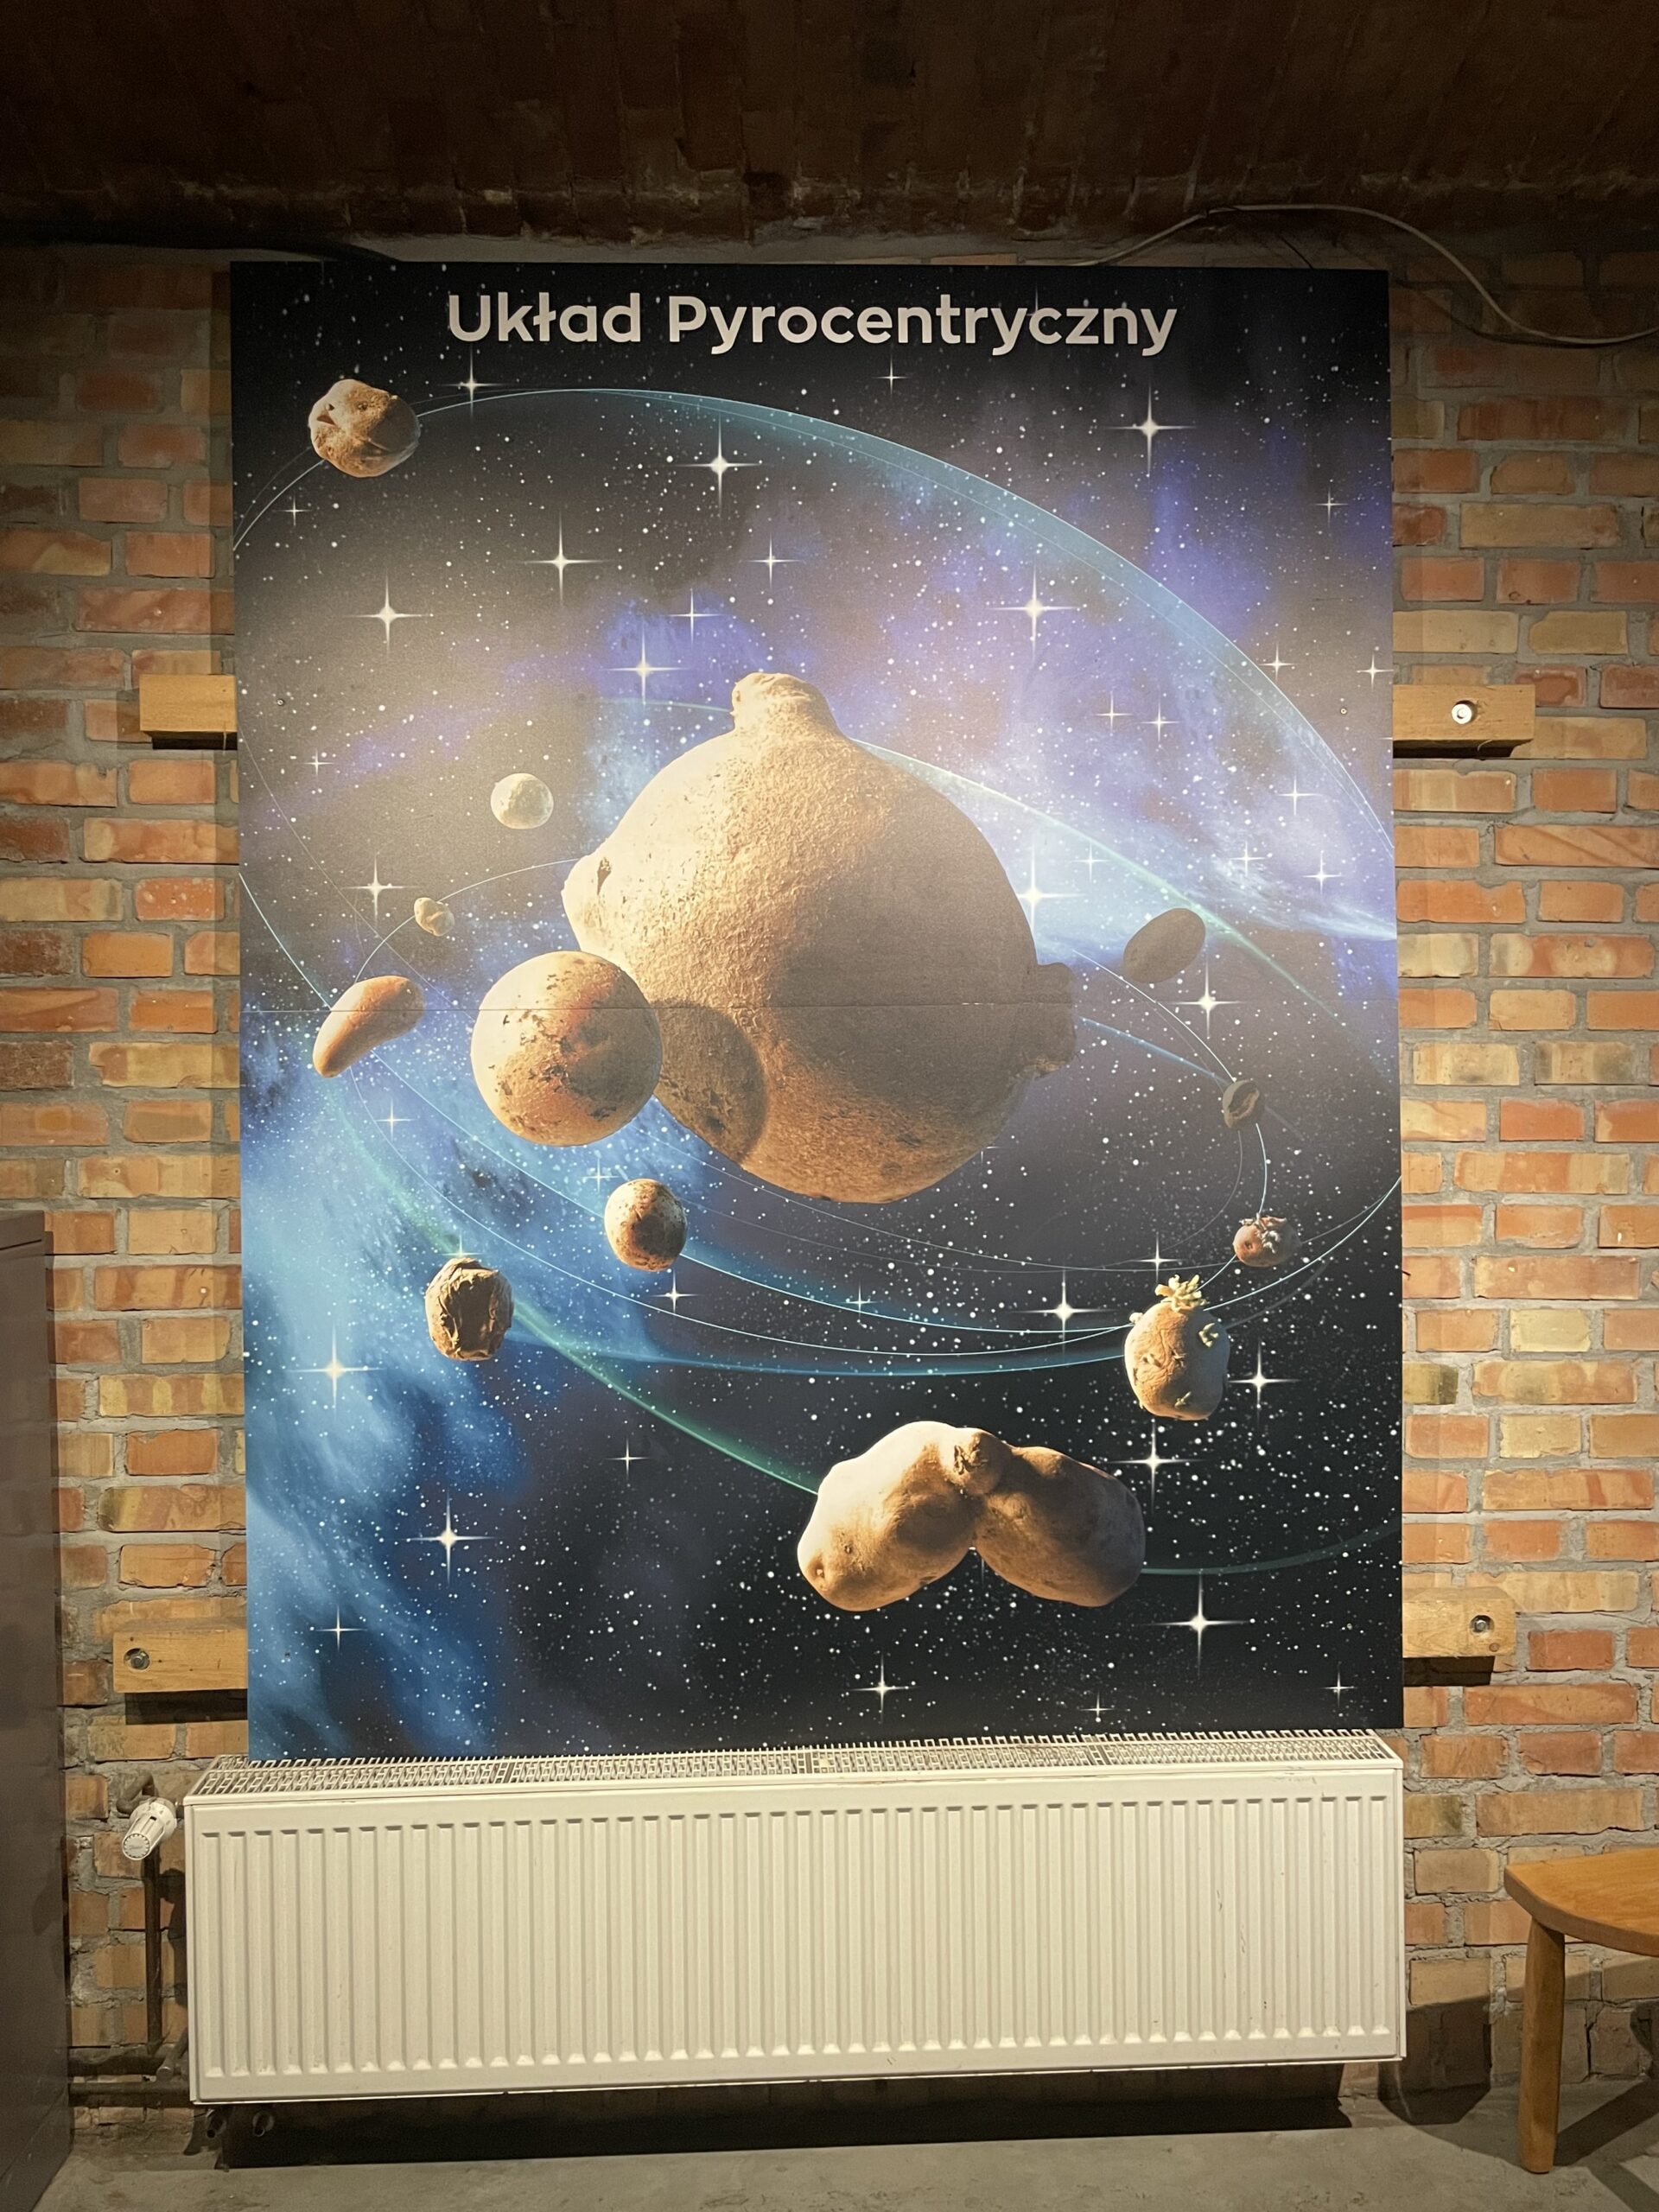 Poznańskie Muzeum Pyry, plakat przedstawiający układ pyrocentryczny